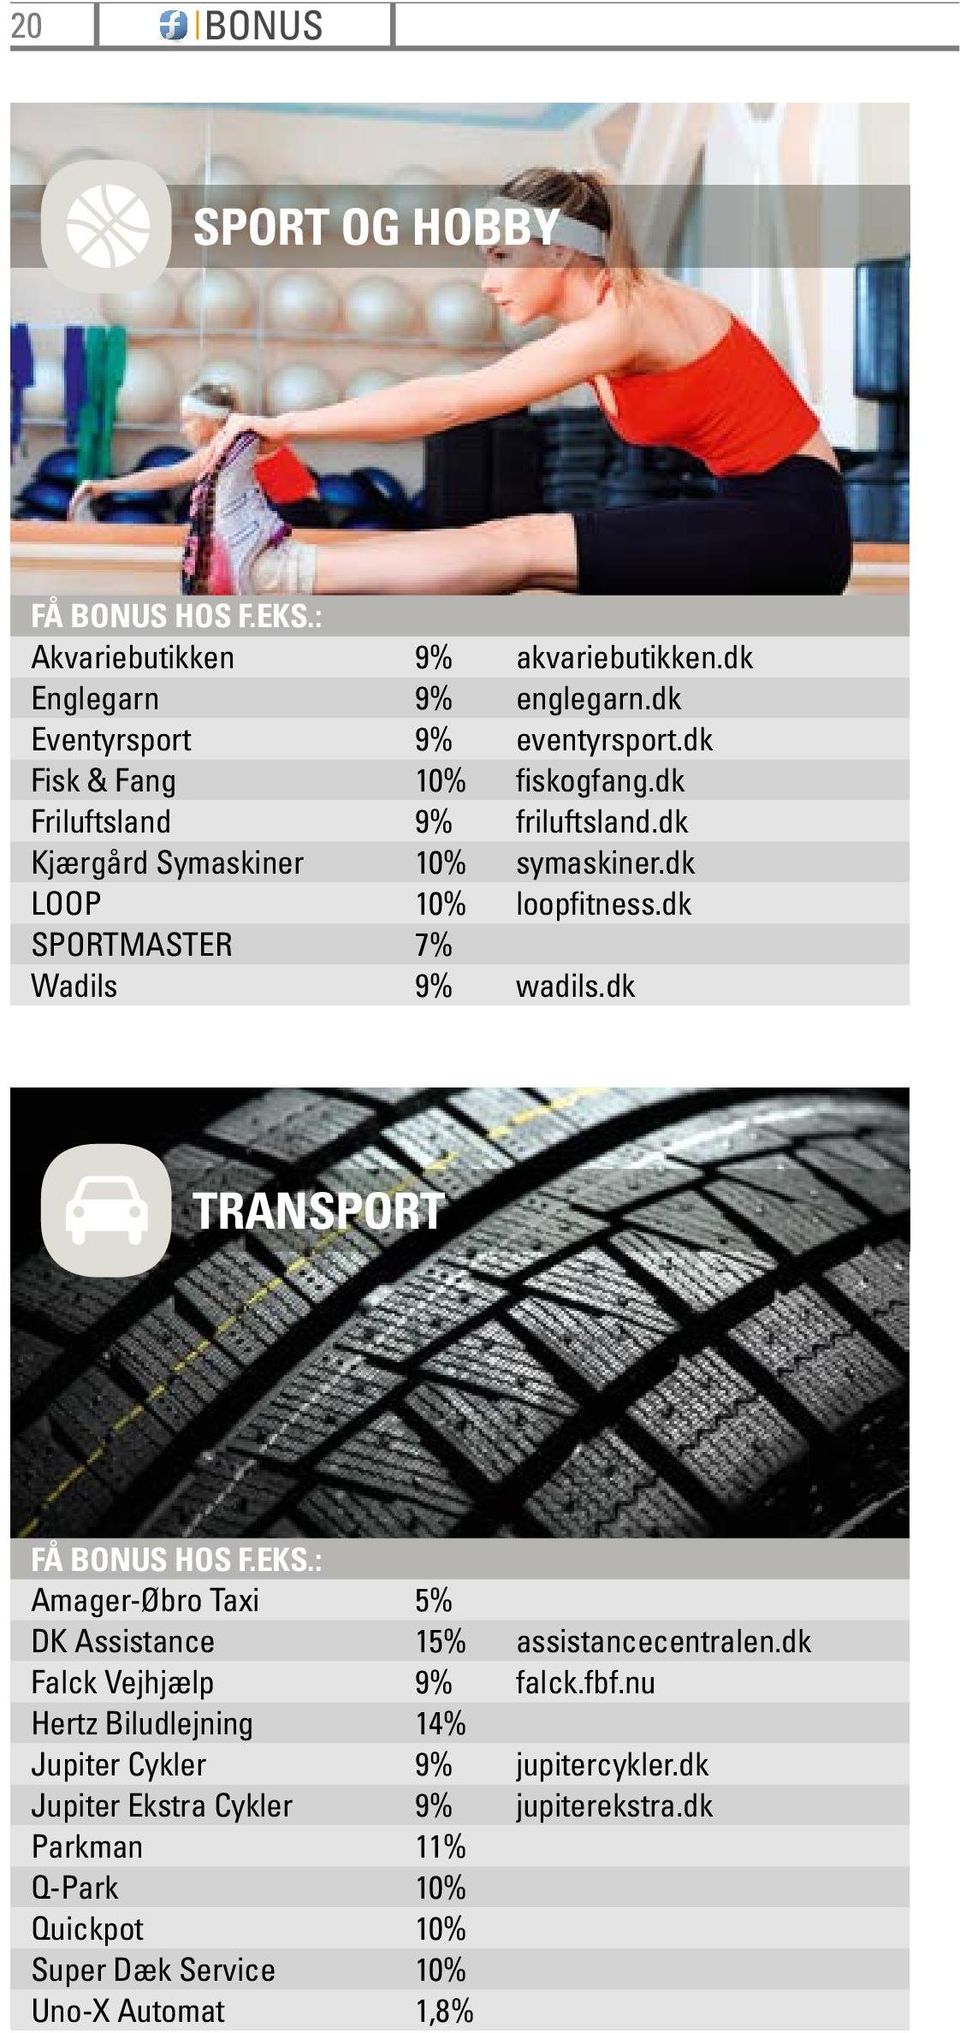 dk SPORTMASTER 7% Wadils 9% wadils.dk TRANSPORT FÅ HOS F.EKS.: Amager-Øbro Taxi 5% DK Assistance 15% assistancecentralen.